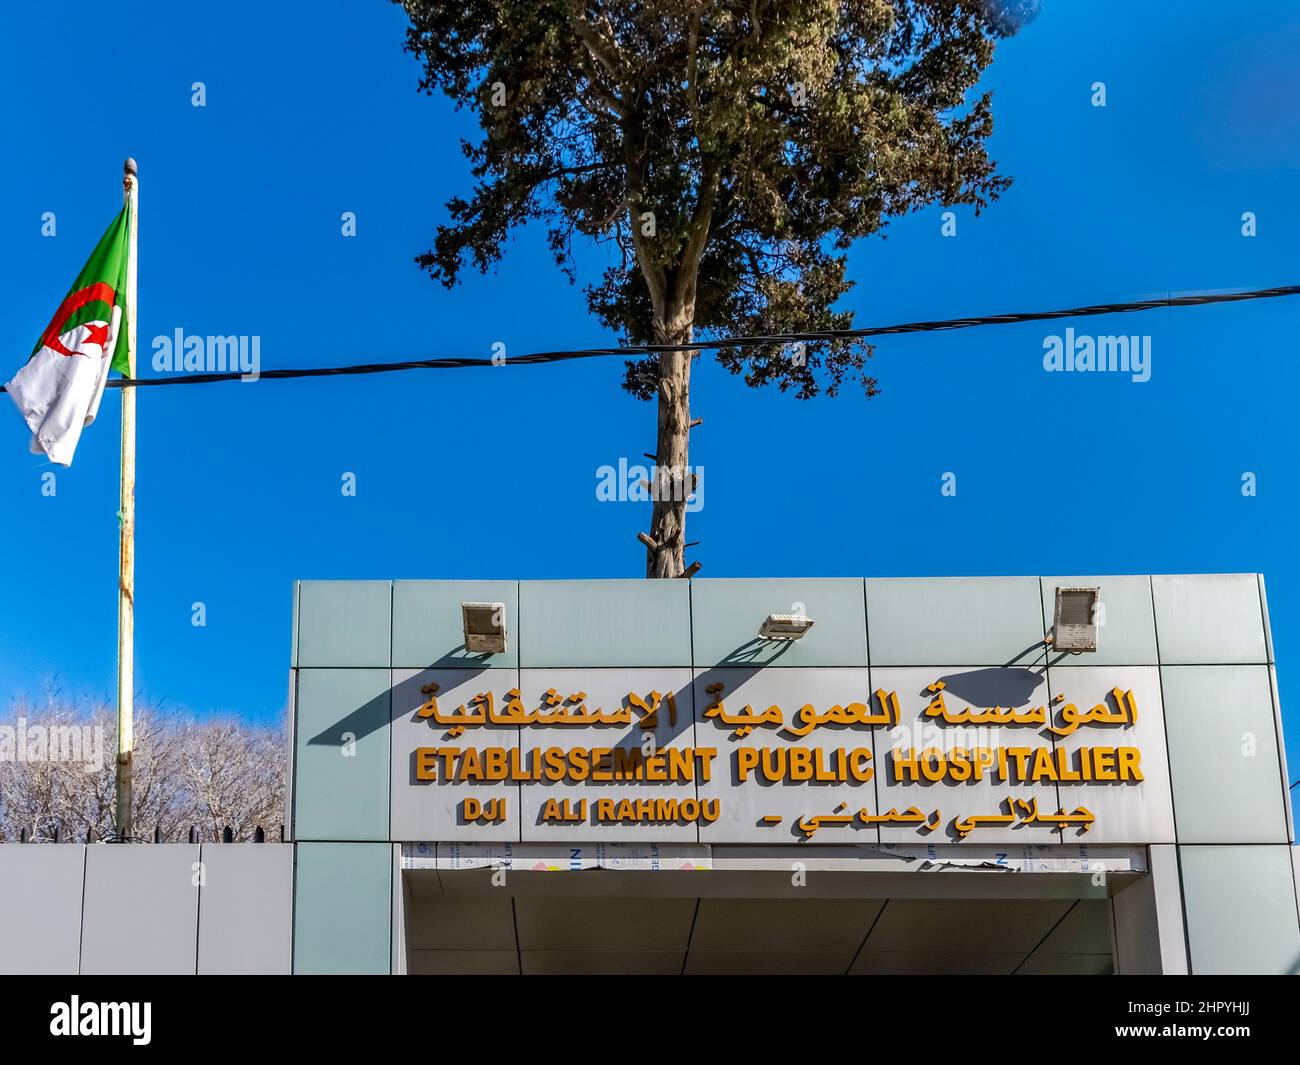 Centre hospitalier public Rahmouni Djillali entrée. Nommez la plaque en arabe et en français. Drapeau algérien, câble électrique, arbres, ciel bleu. Banque D'Images